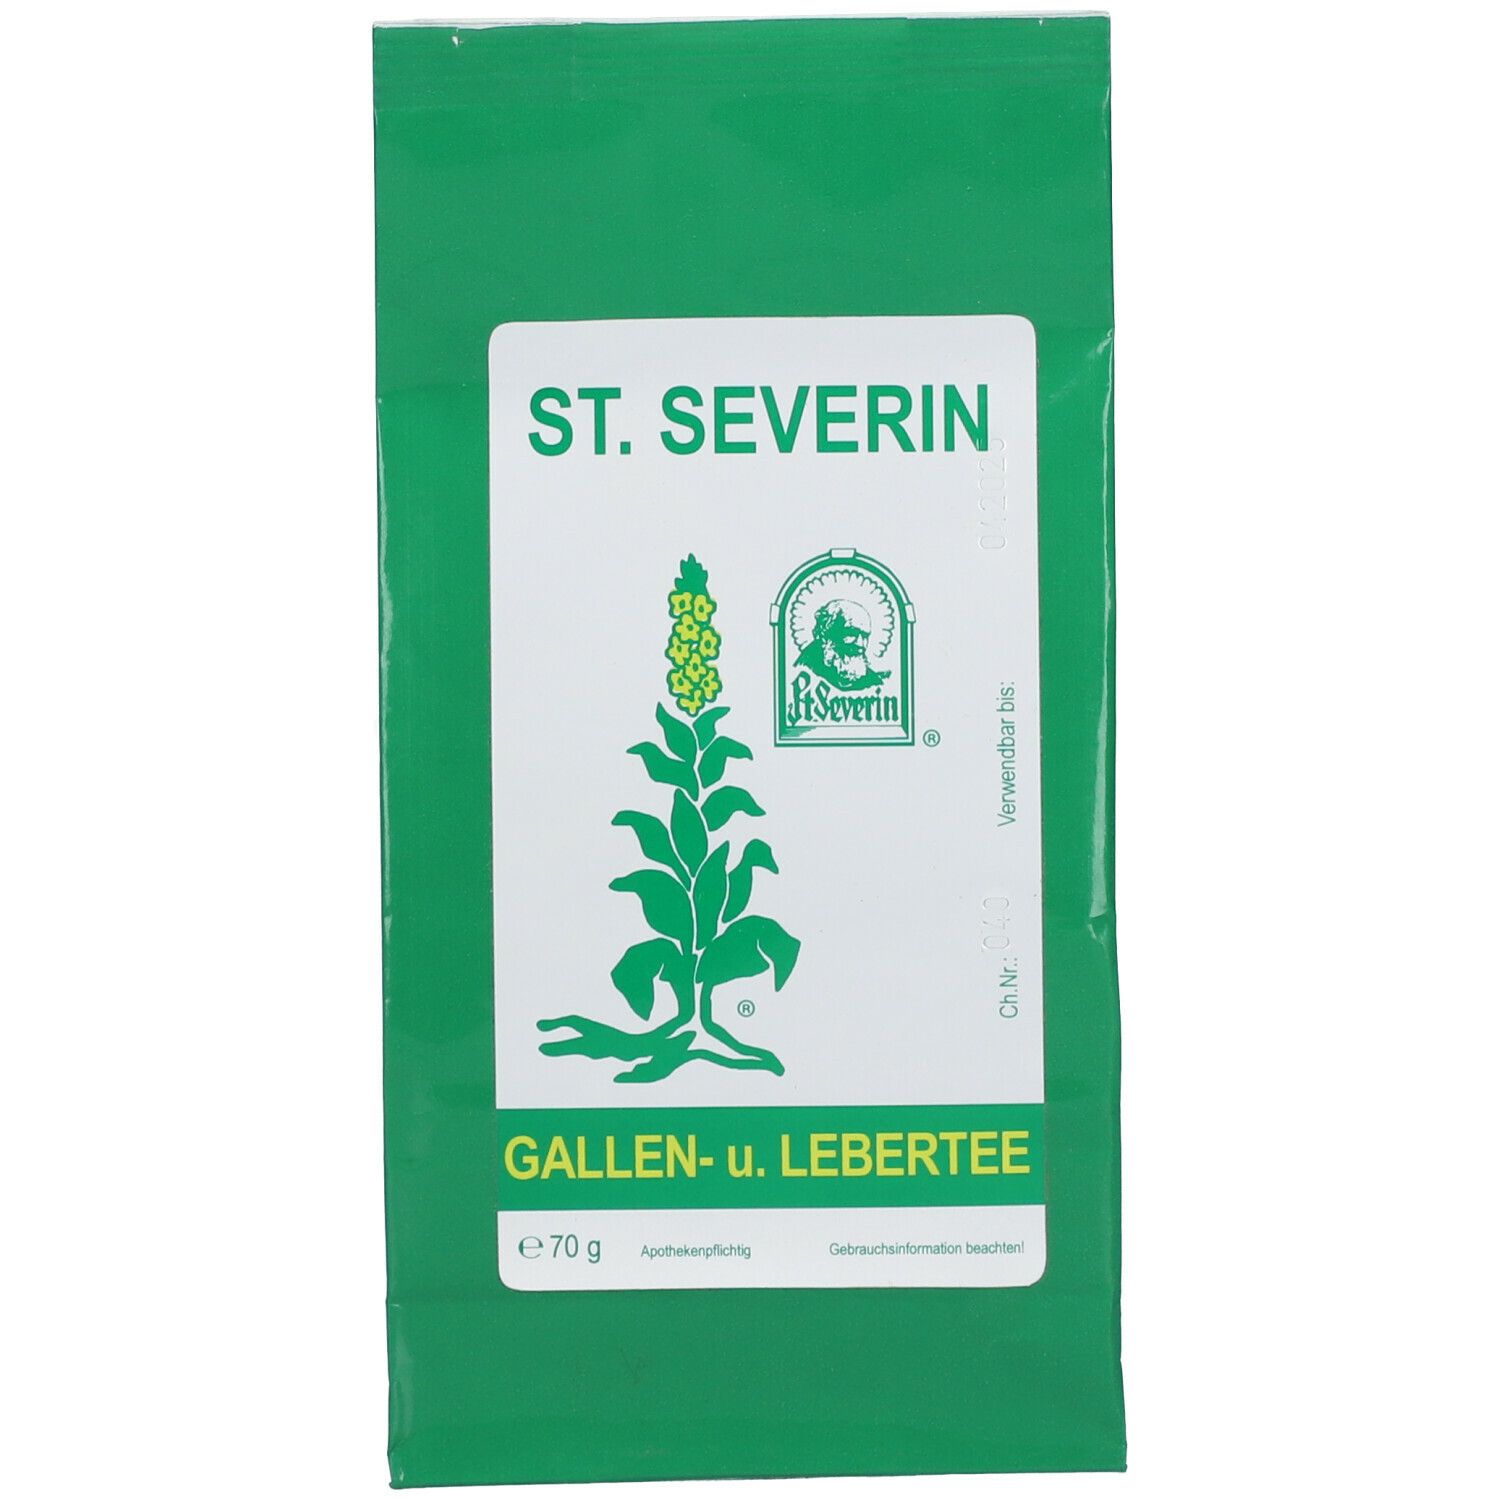 Gallen- und Lebertee St. Severin